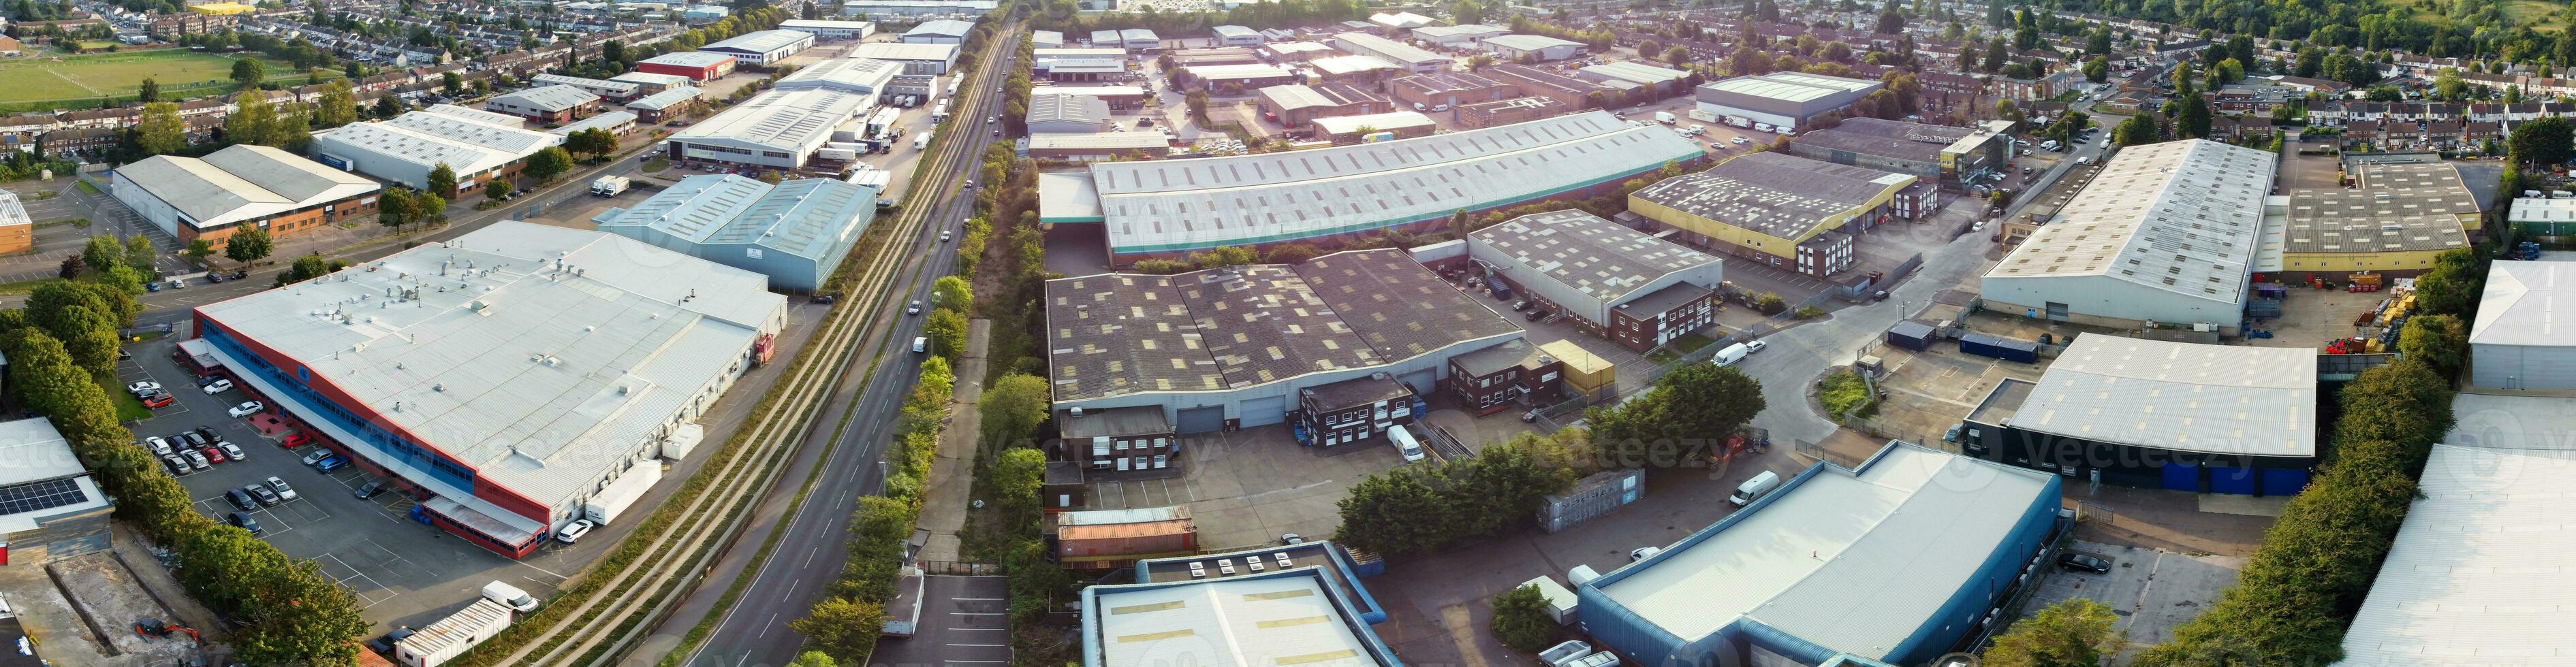 aérien vue de Résidentiel maisons et industriel biens combiné à s'attarder route près Farley collines luton ville, Angleterre Royaume-Uni. le haute angle métrage a été capturé avec drone caméra sur septembre 7ème, 2023 photo